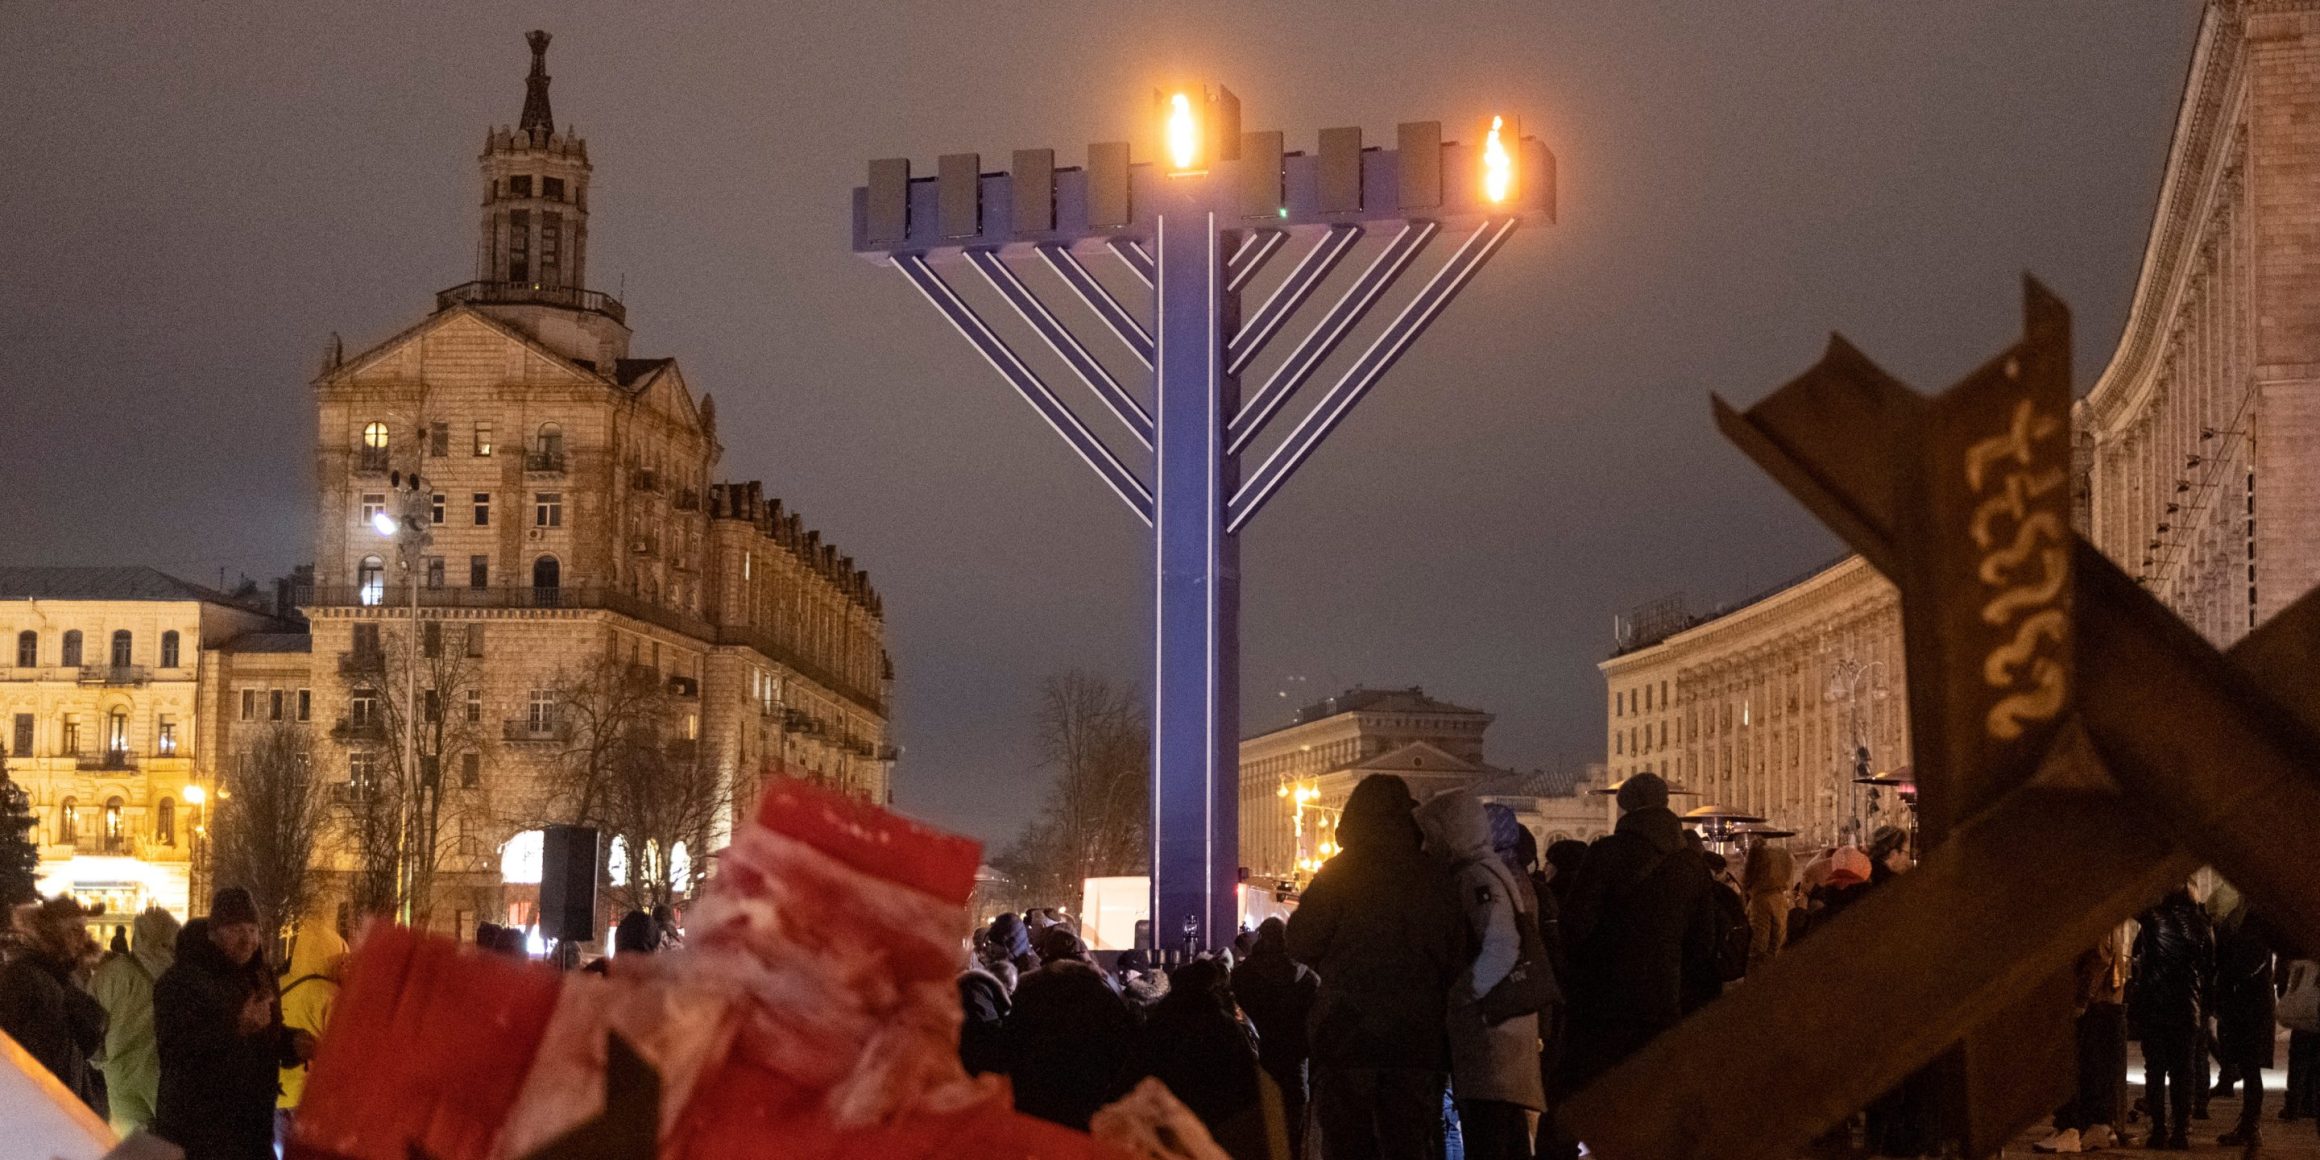 Des membres de la communauté juive se tiennent près d'une hanoukkiah géante lors d'ne cérémonie pour la fête juive de Hanoukka sur le Maïdan, à Kiev, le 18 décembre 2022, alors que le pays subit les attaques russes en Ukraine.